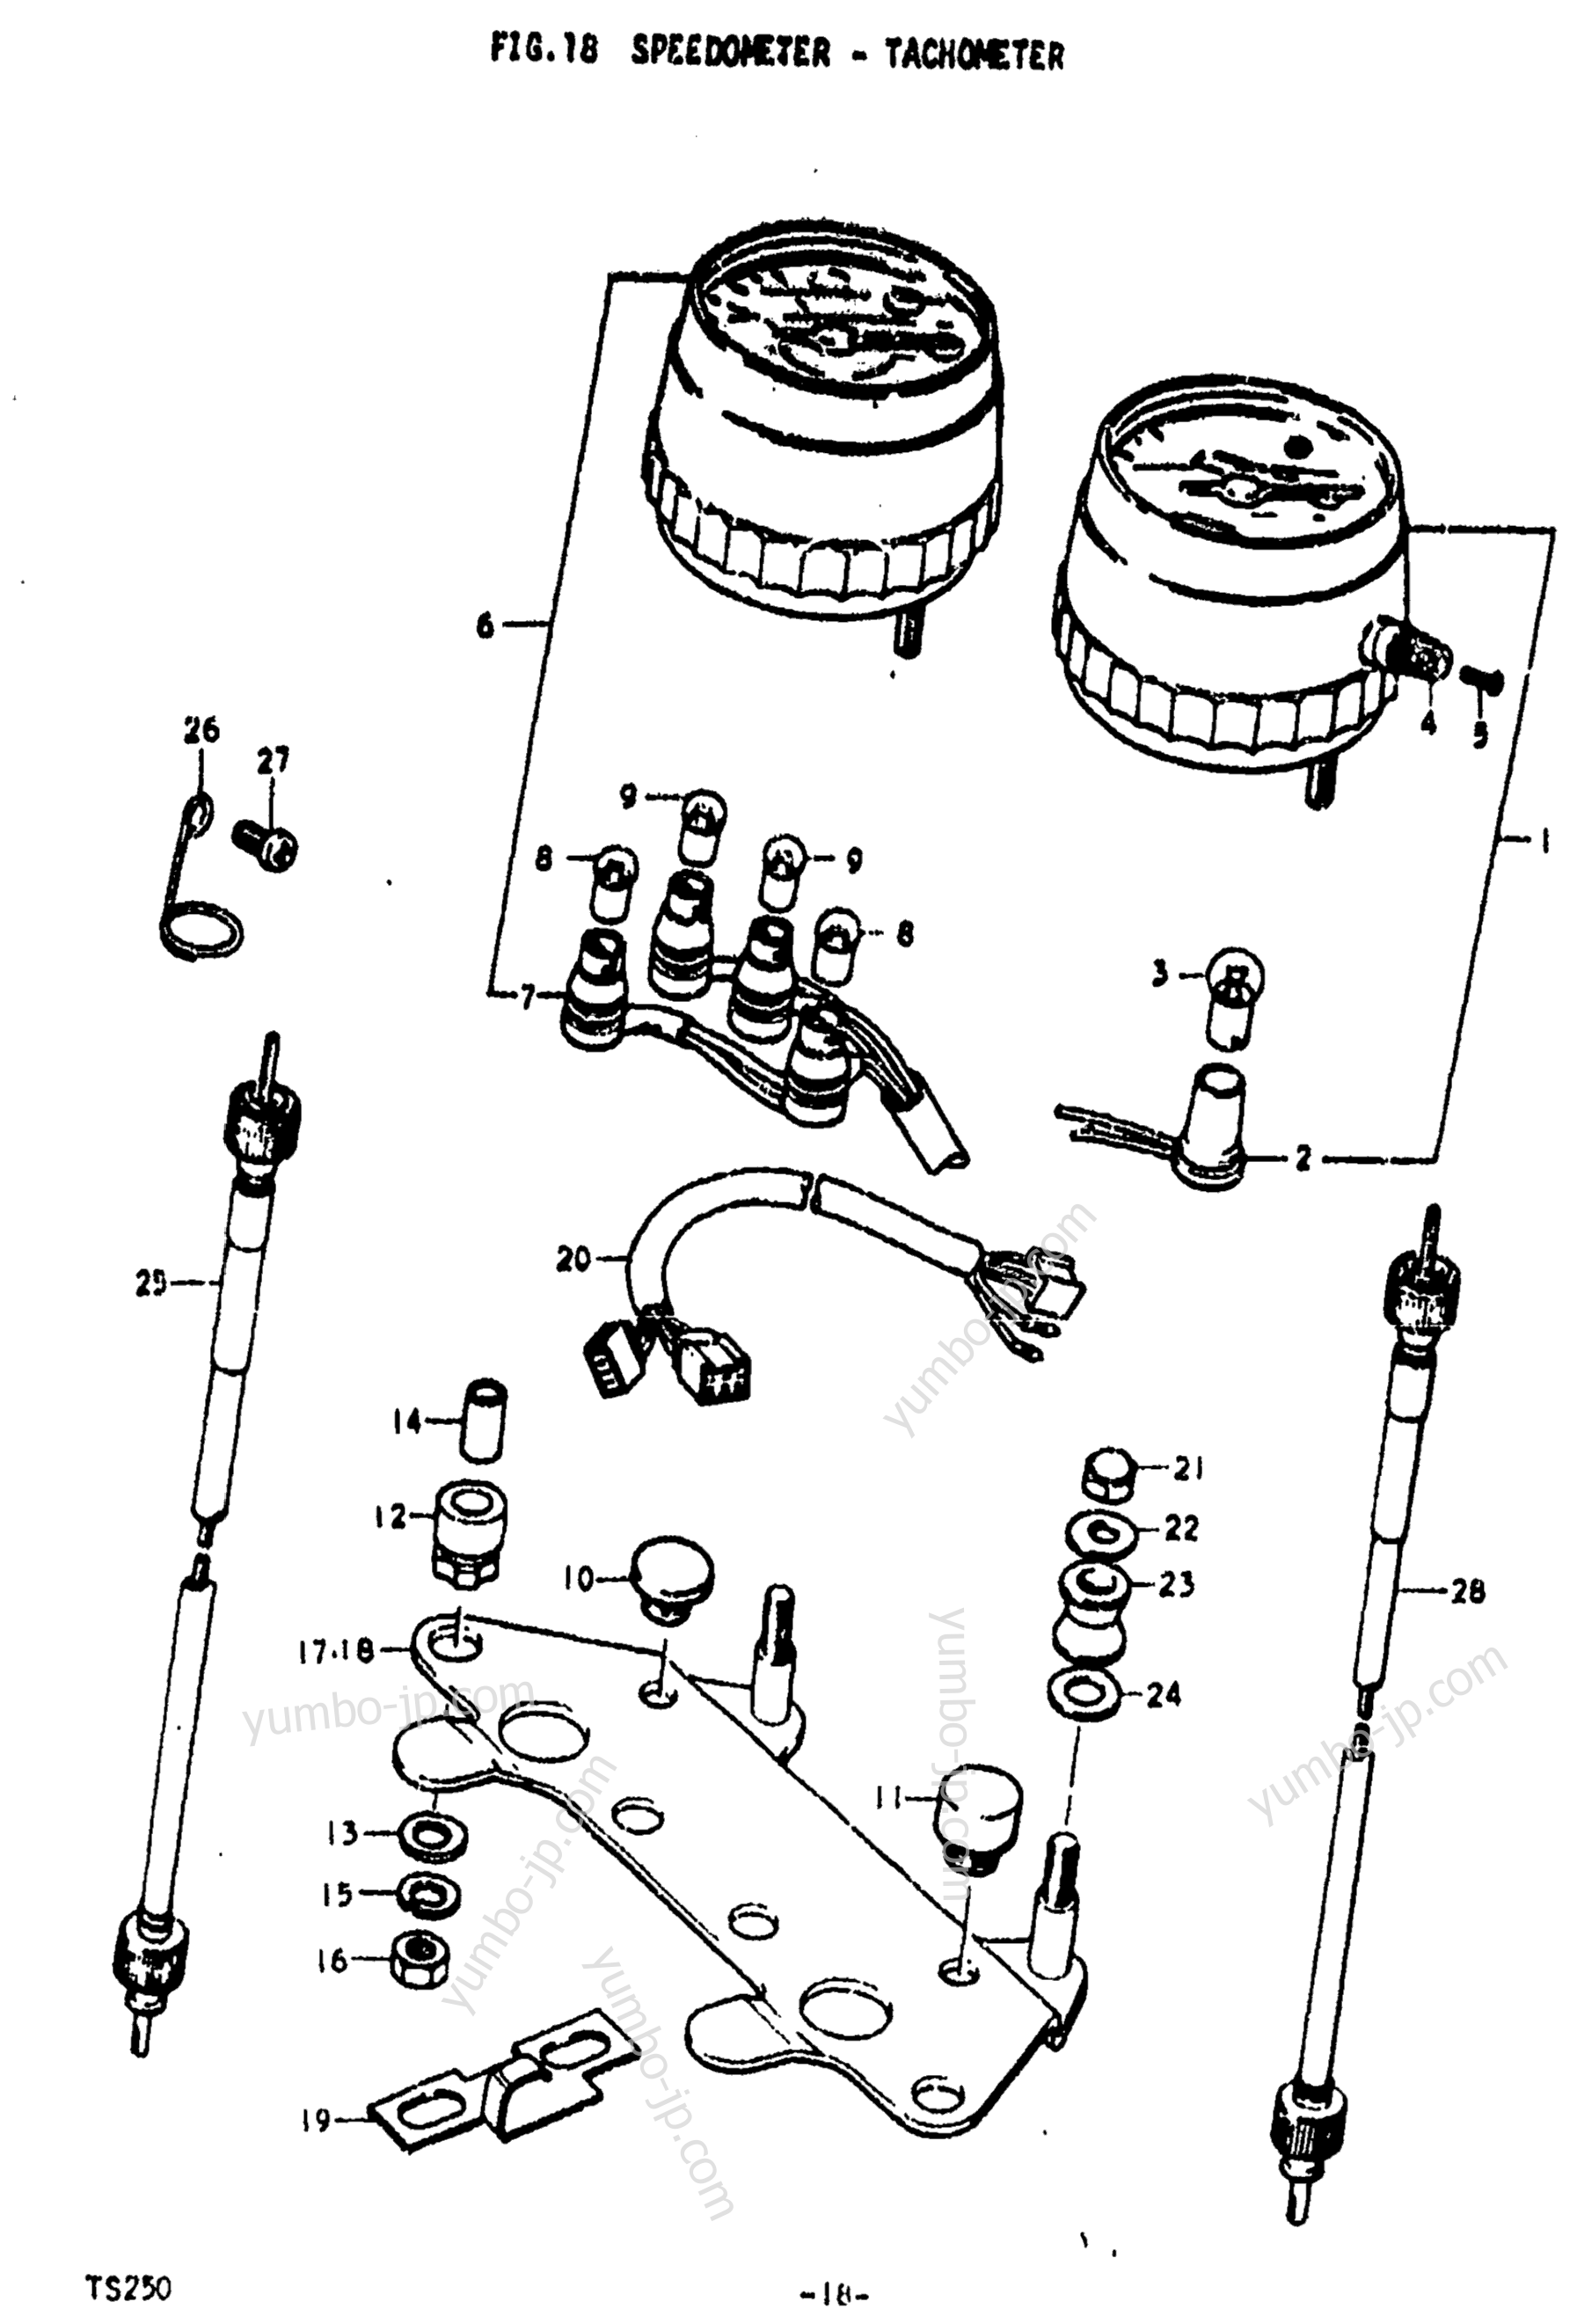 Speedometer - Tachometer for motorcycles SUZUKI TS250 1975 year